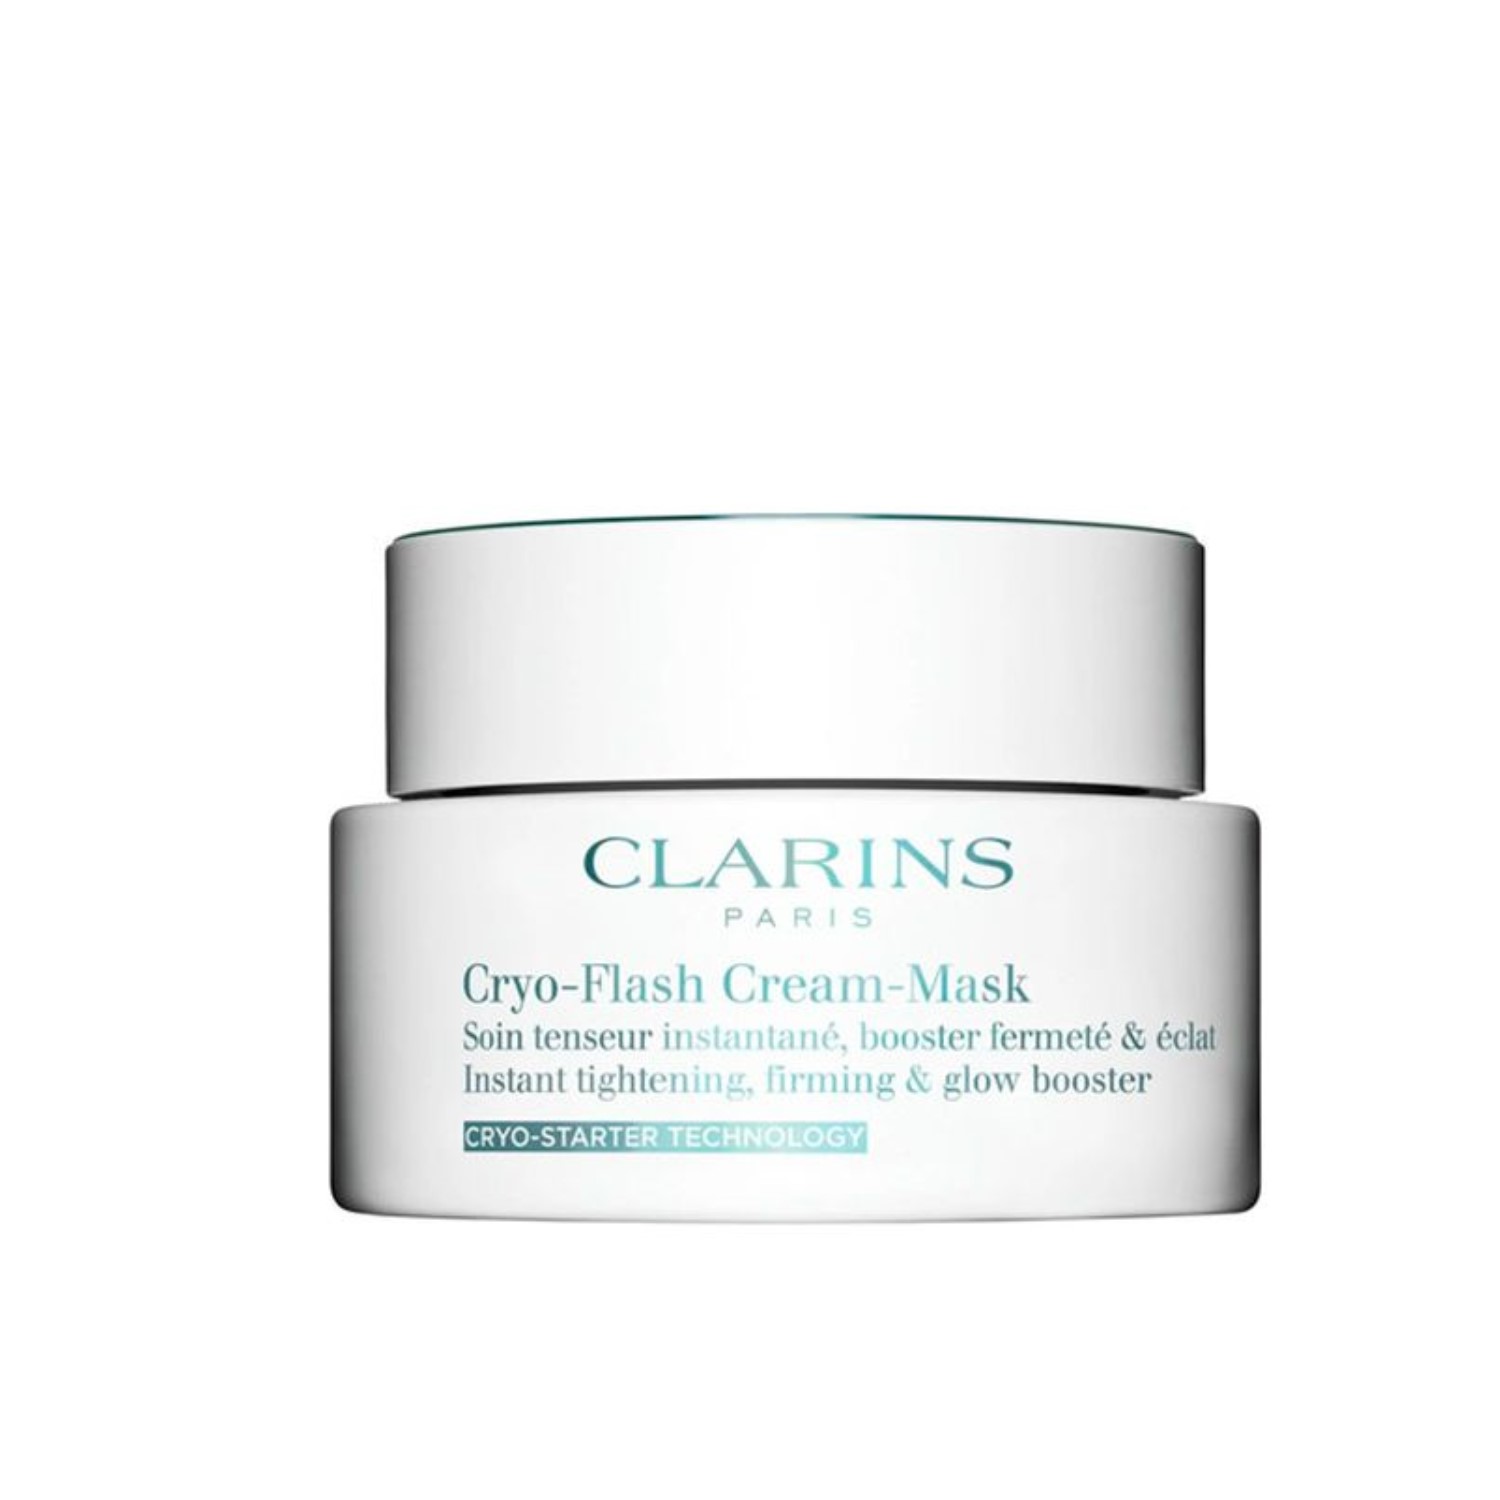 cryo-flash cream-mask (mascarilla anti-edad hidratante efecto frío)